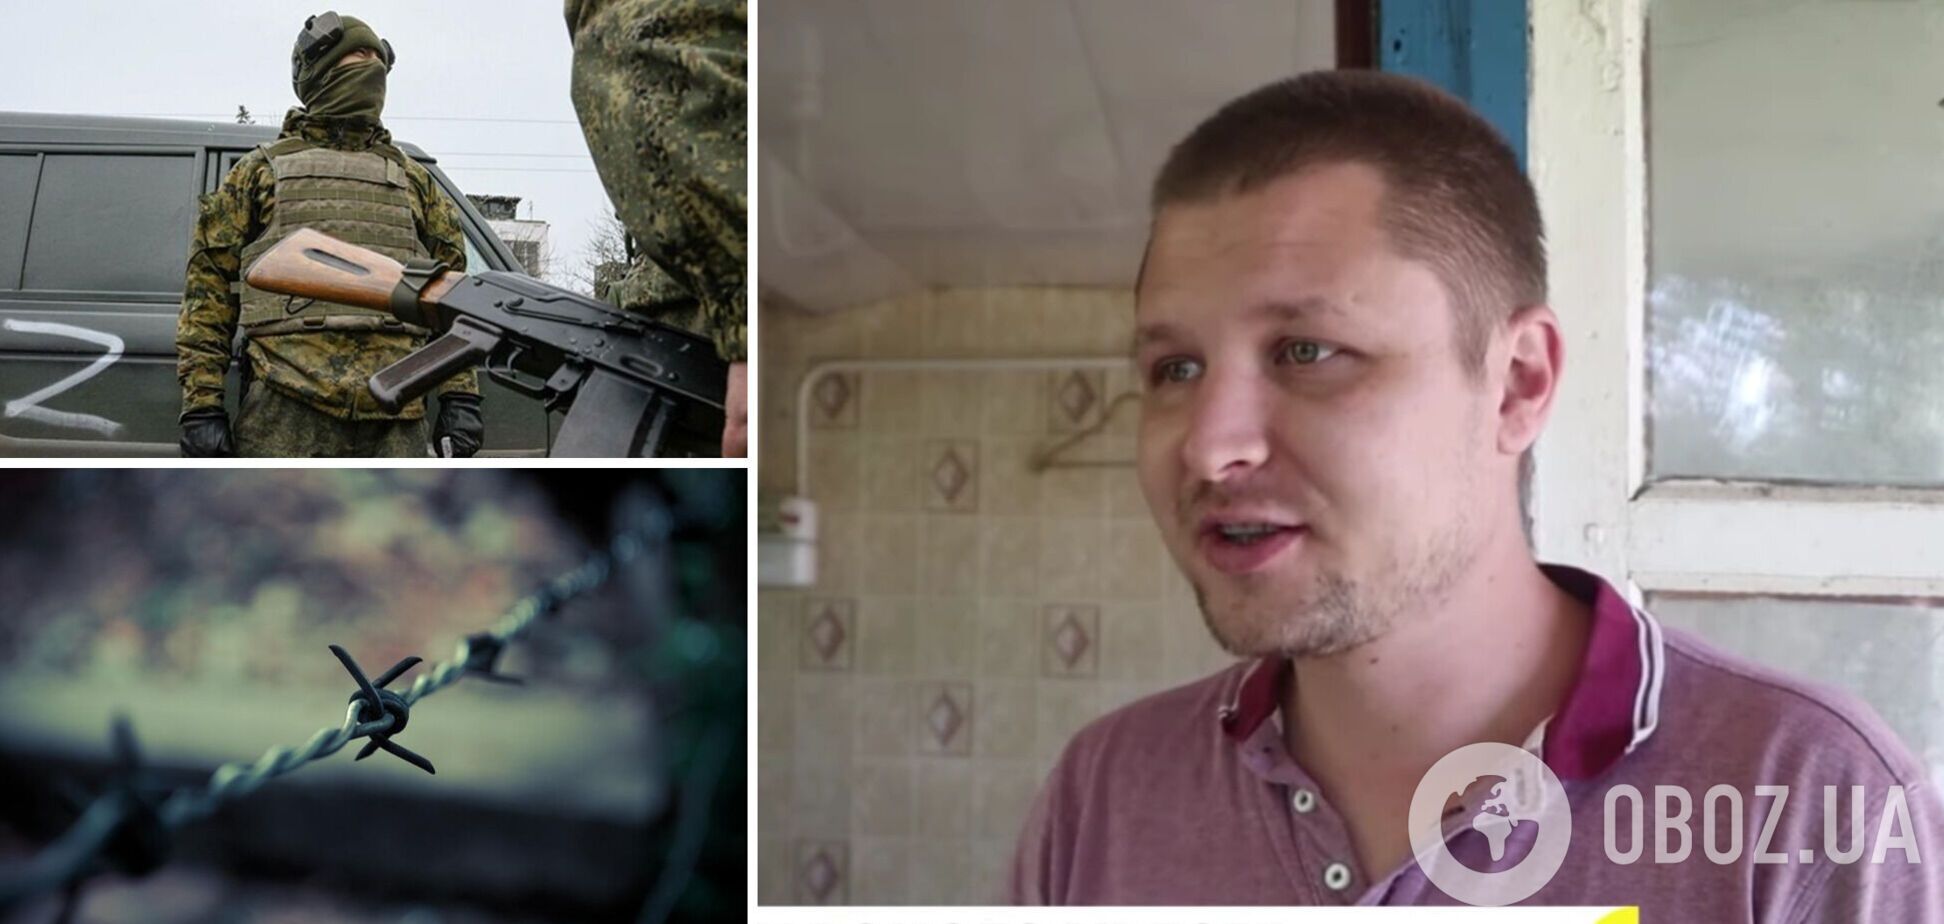 'Натянули мешок на голову, воткнули нож в ногу': украинец рассказал о пребывании в плену оккупантов. Фото и видео